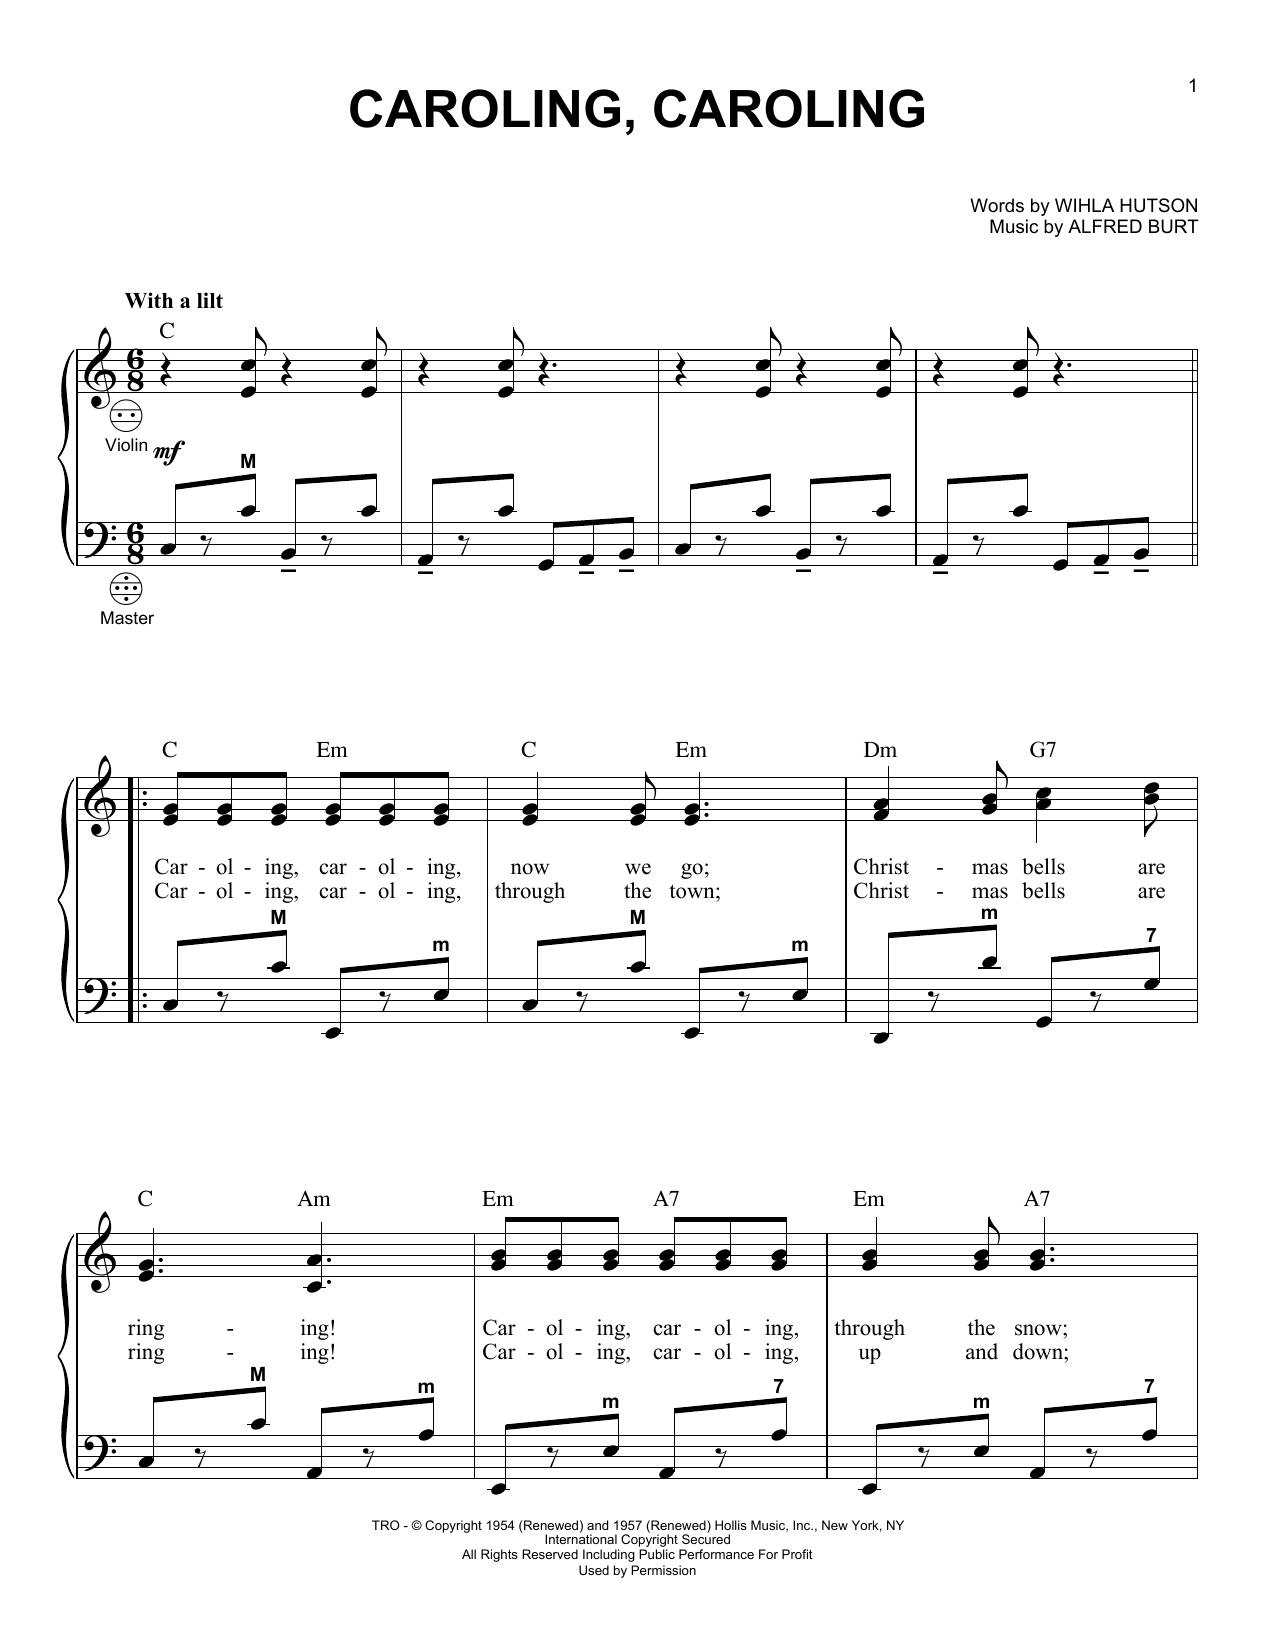 Alfred Burt Caroling, Caroling Sheet Music Notes & Chords for Piano - Download or Print PDF